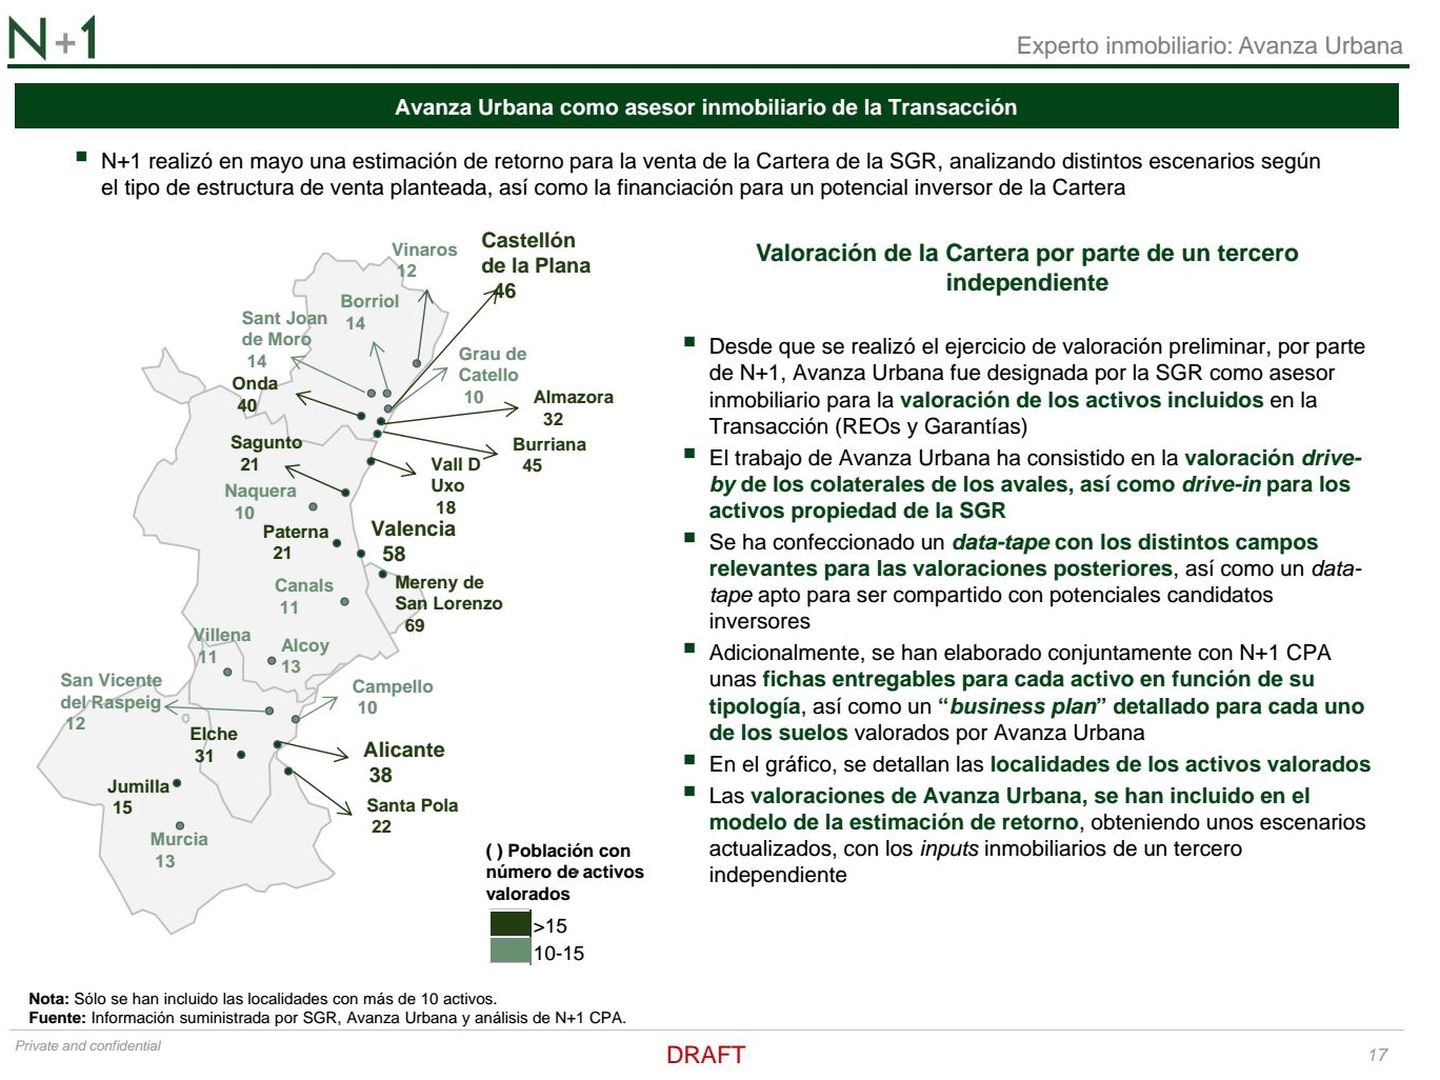 Reparto de activos inmobiliarios de la SGR en la Comunidad Valenciana y Murcia. (N+1 y Avanza Urbana)